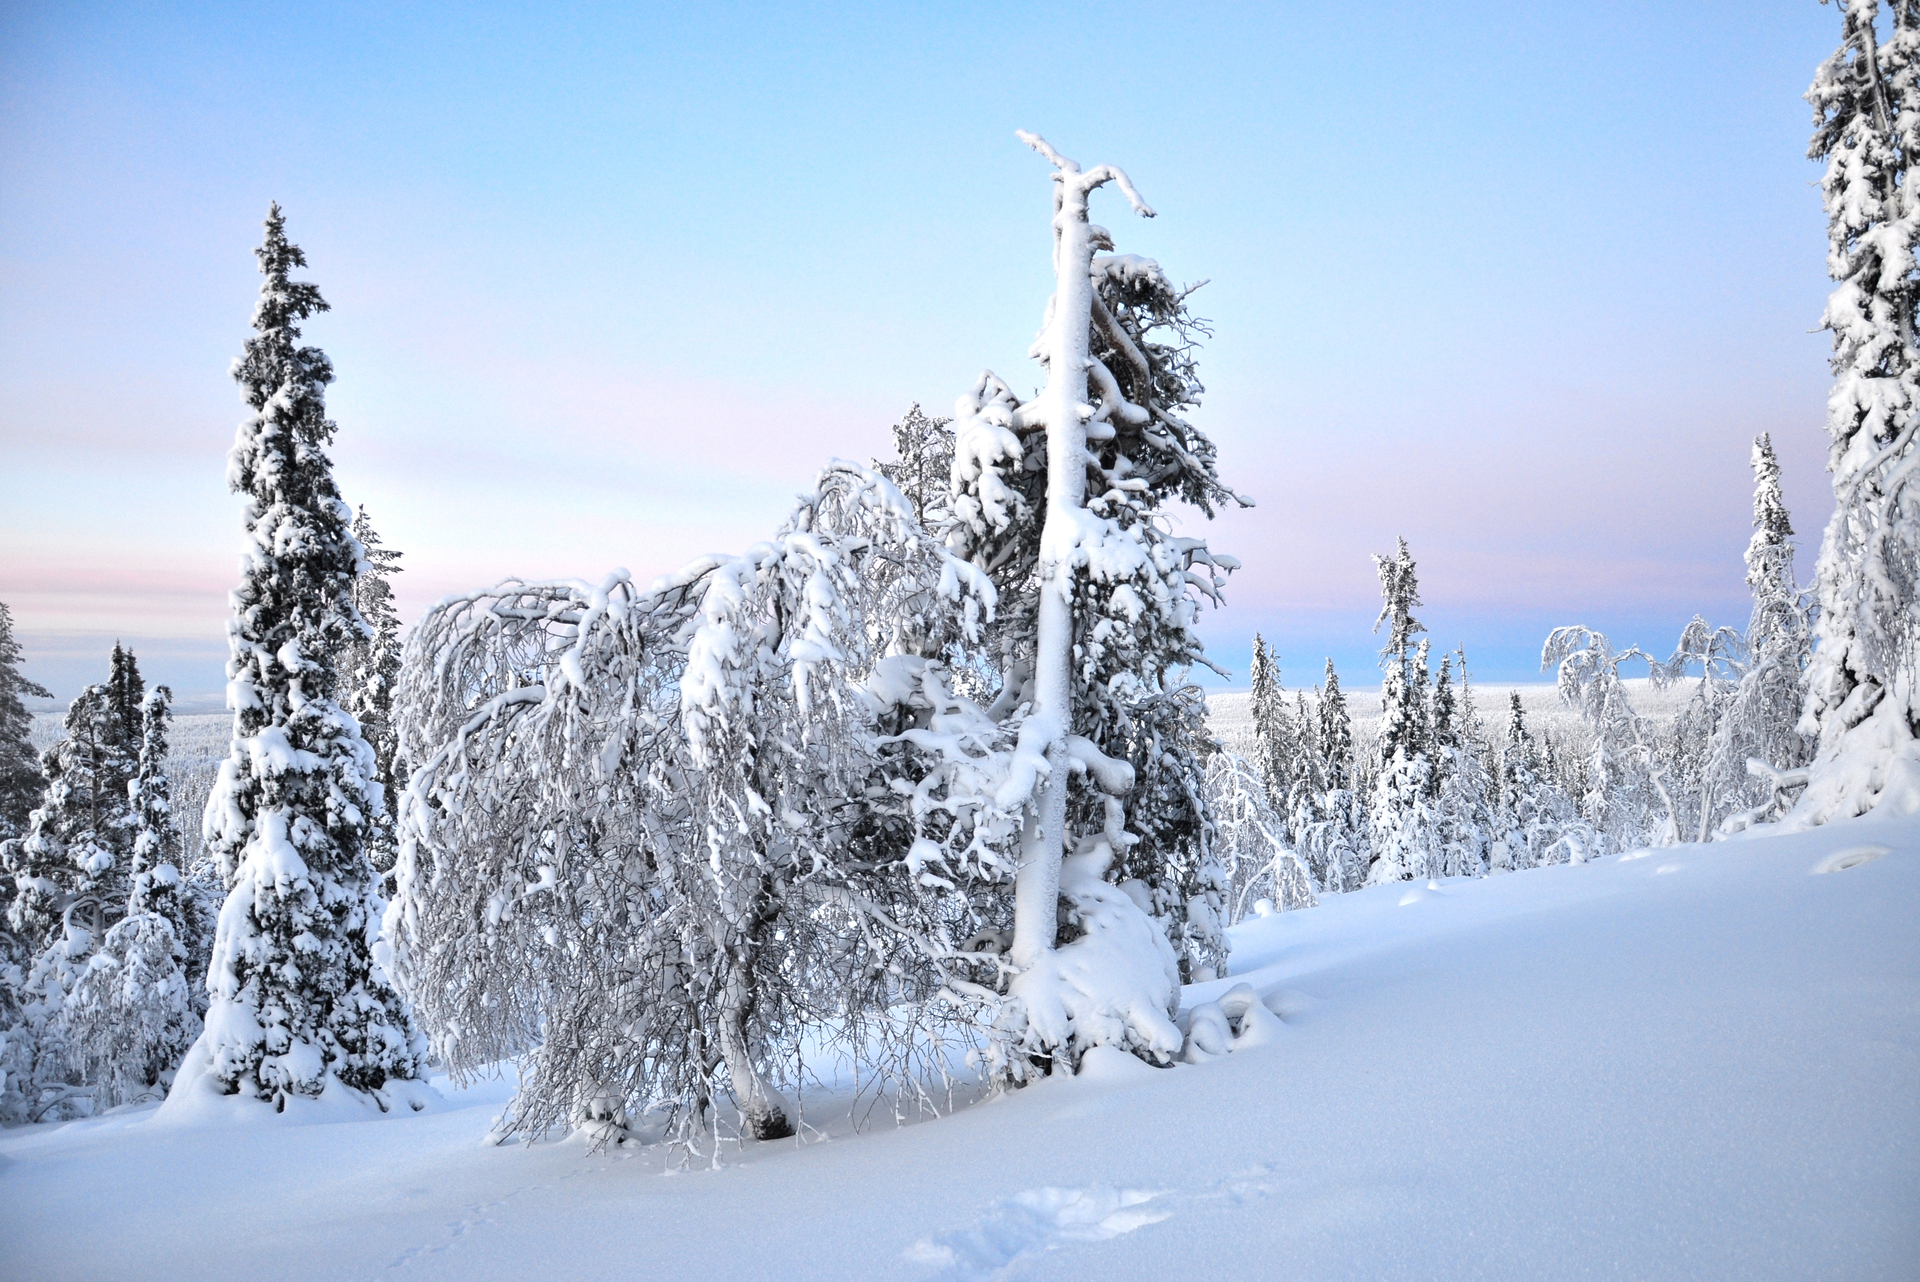 Ten uroczy obrazek przedstawia fiński krajobraz zimowy, z pokrytą śniegiem scenerią leśną i górami w tle. Biały puch i lodowe formacje dodają uroku krajobrazowi, a ciemne drzewa i skały kontrastują z jasnym tłem. Można z łatwością poczuć chłodny klimat i piękno natury Finlandii, która przyciąga turystów z całego świata.